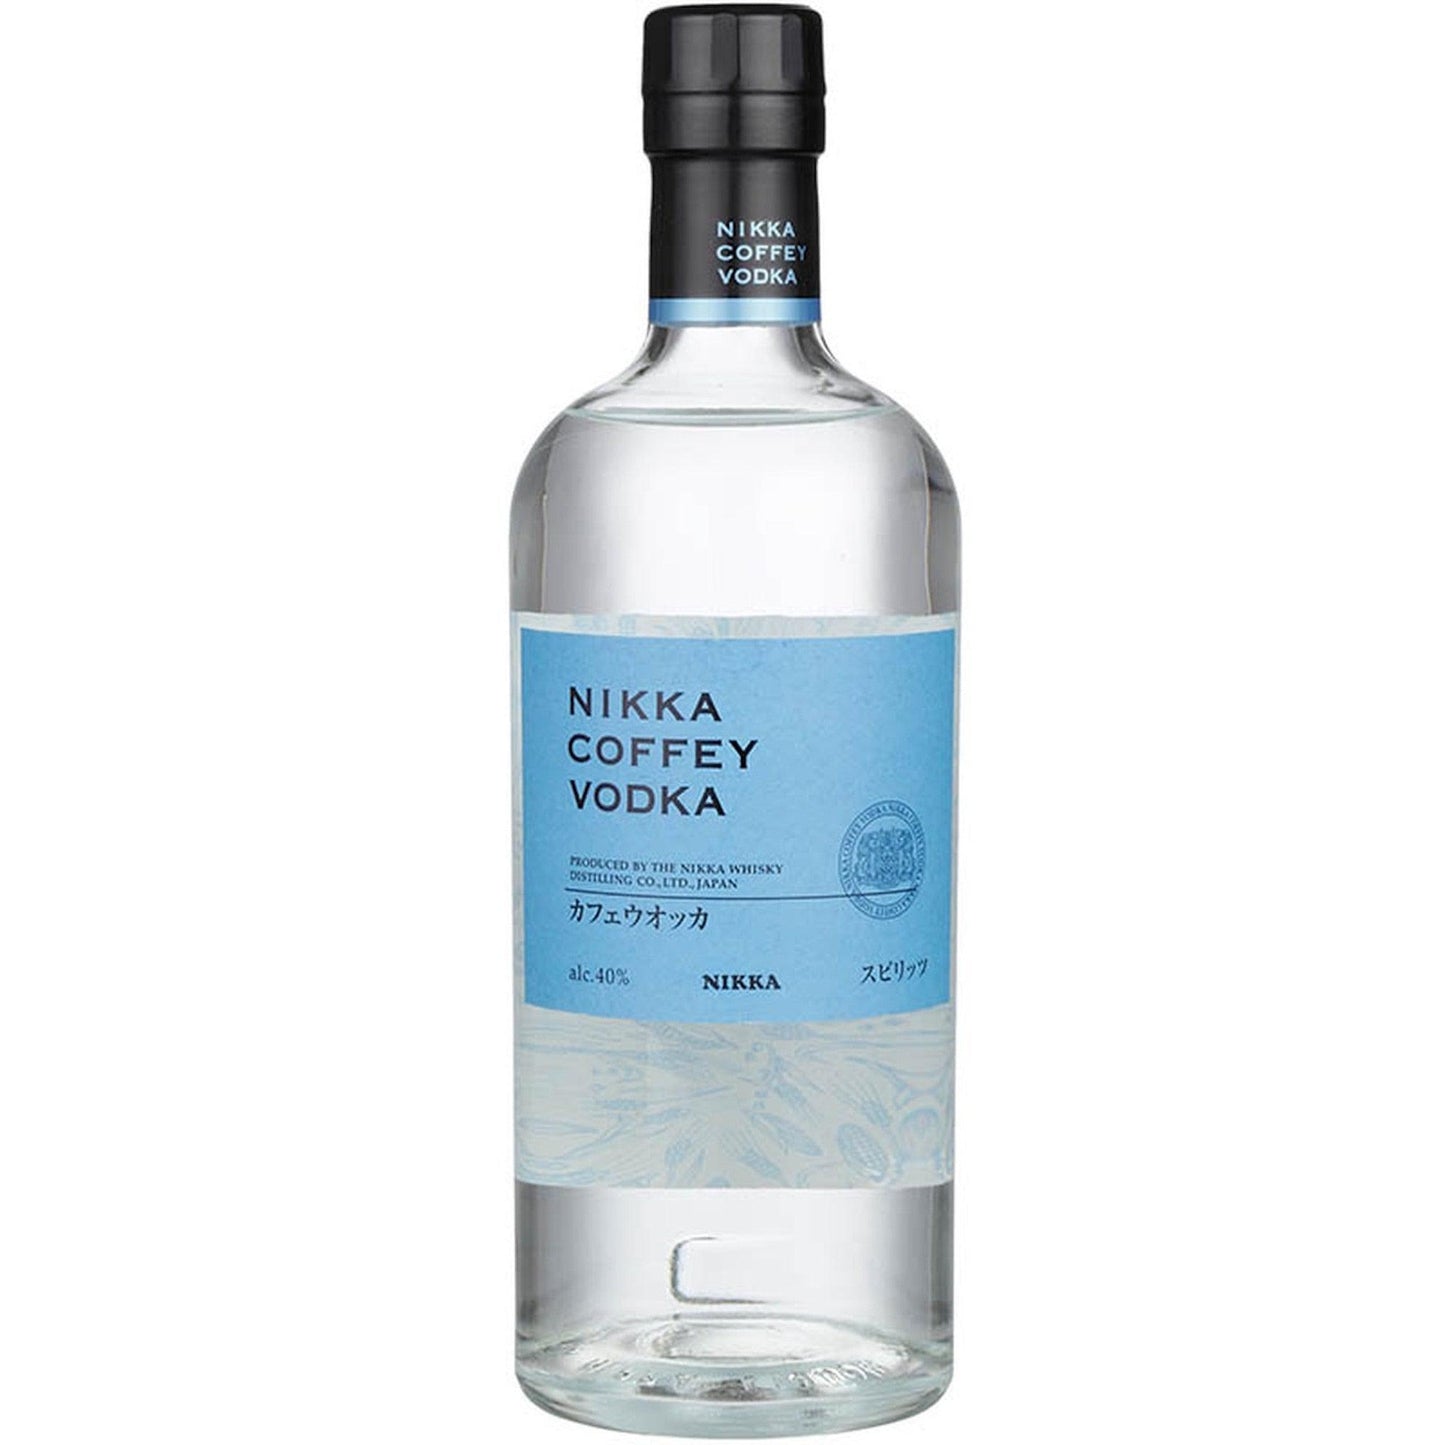 Nikka Whisky Distilling - 'Coffey' Vodka (750ML)